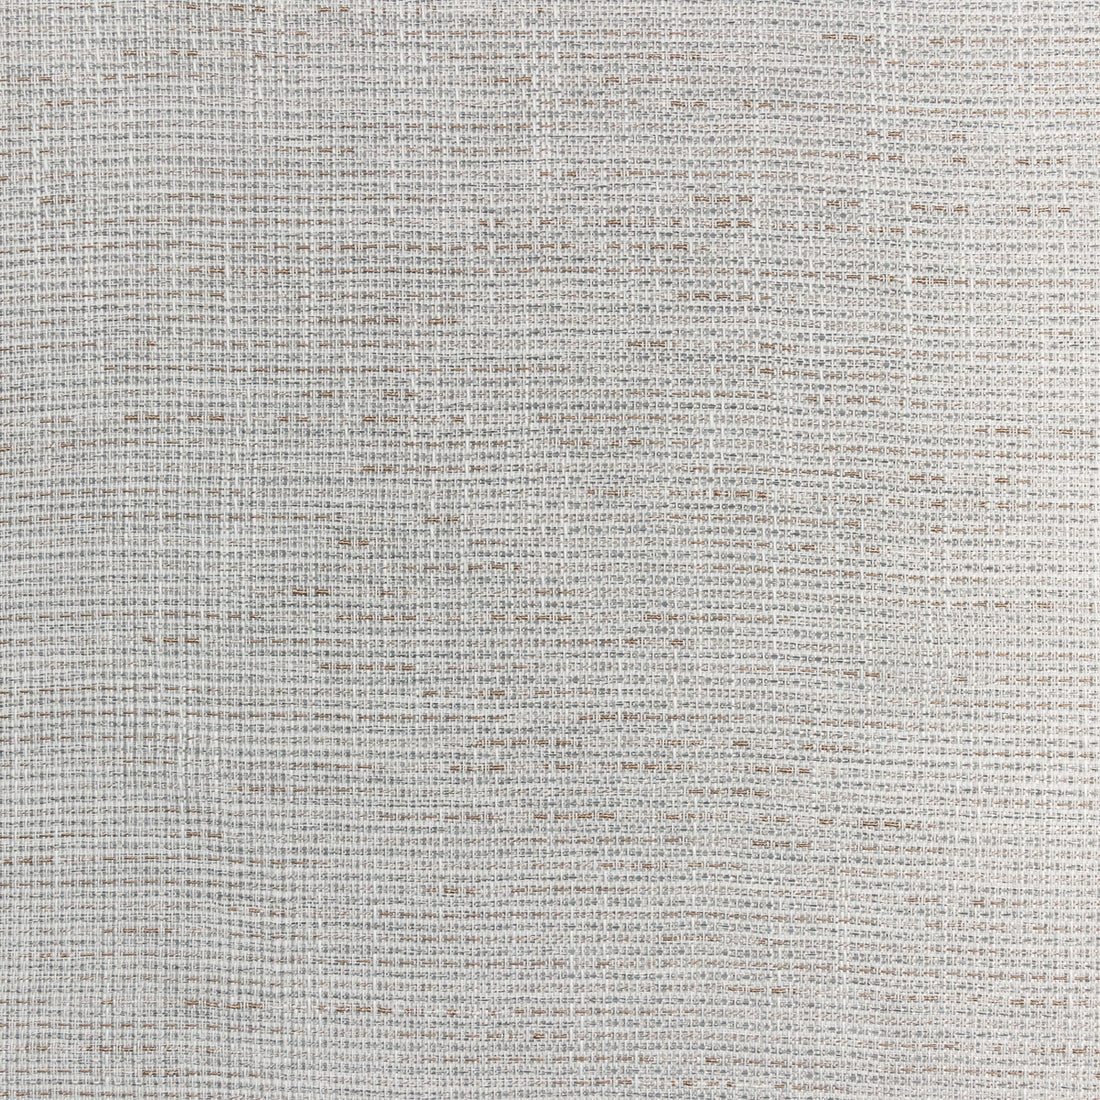 Kravet Basics fabric in 4874-11 color - pattern 4874.11.0 - by Kravet Basics